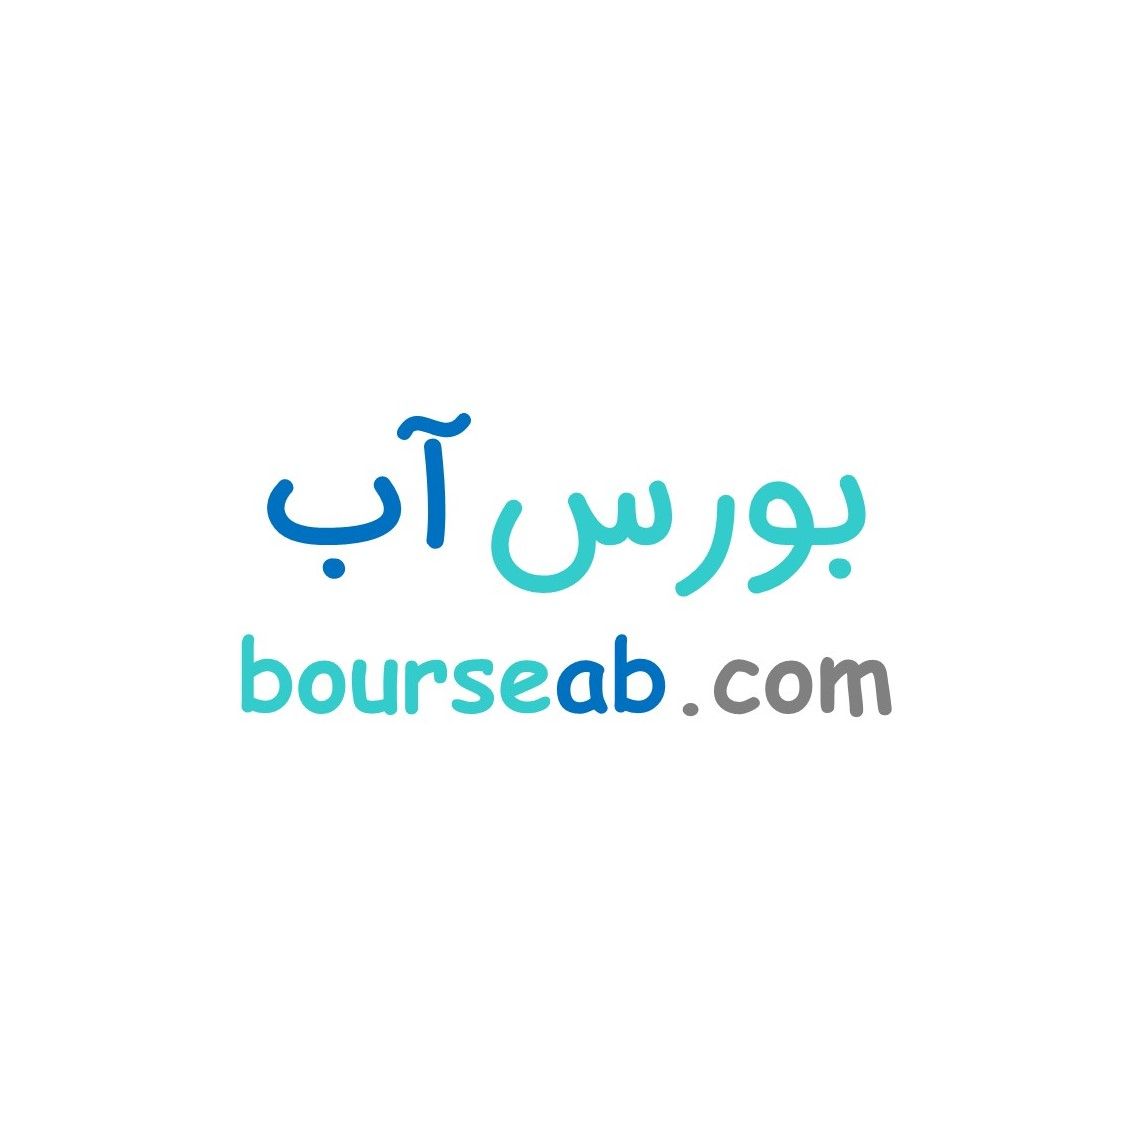 عکس پروفایل بورس آب ایران - بازار تخصصی آب در ایران